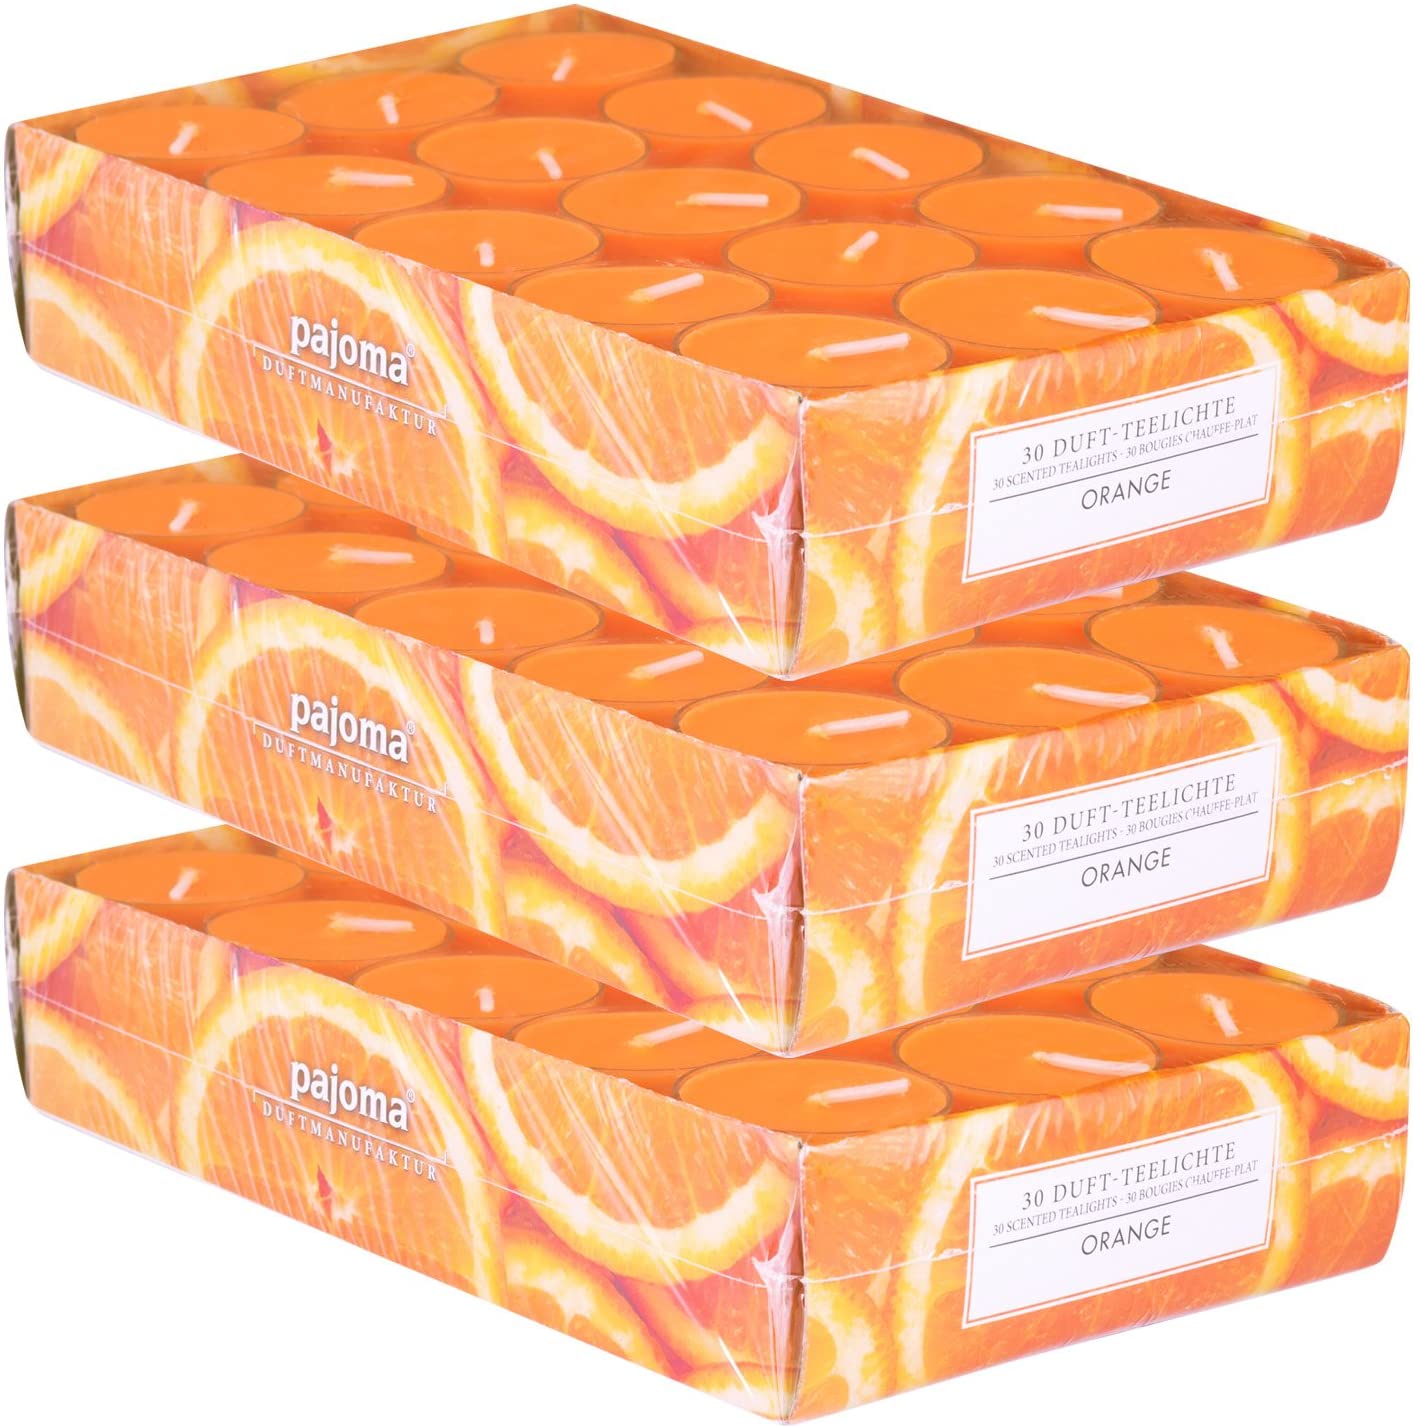 Pajoma Duftteelicht Orange, 90 Stück (3 X 30Er Pack) In Verschiedenen Düfte